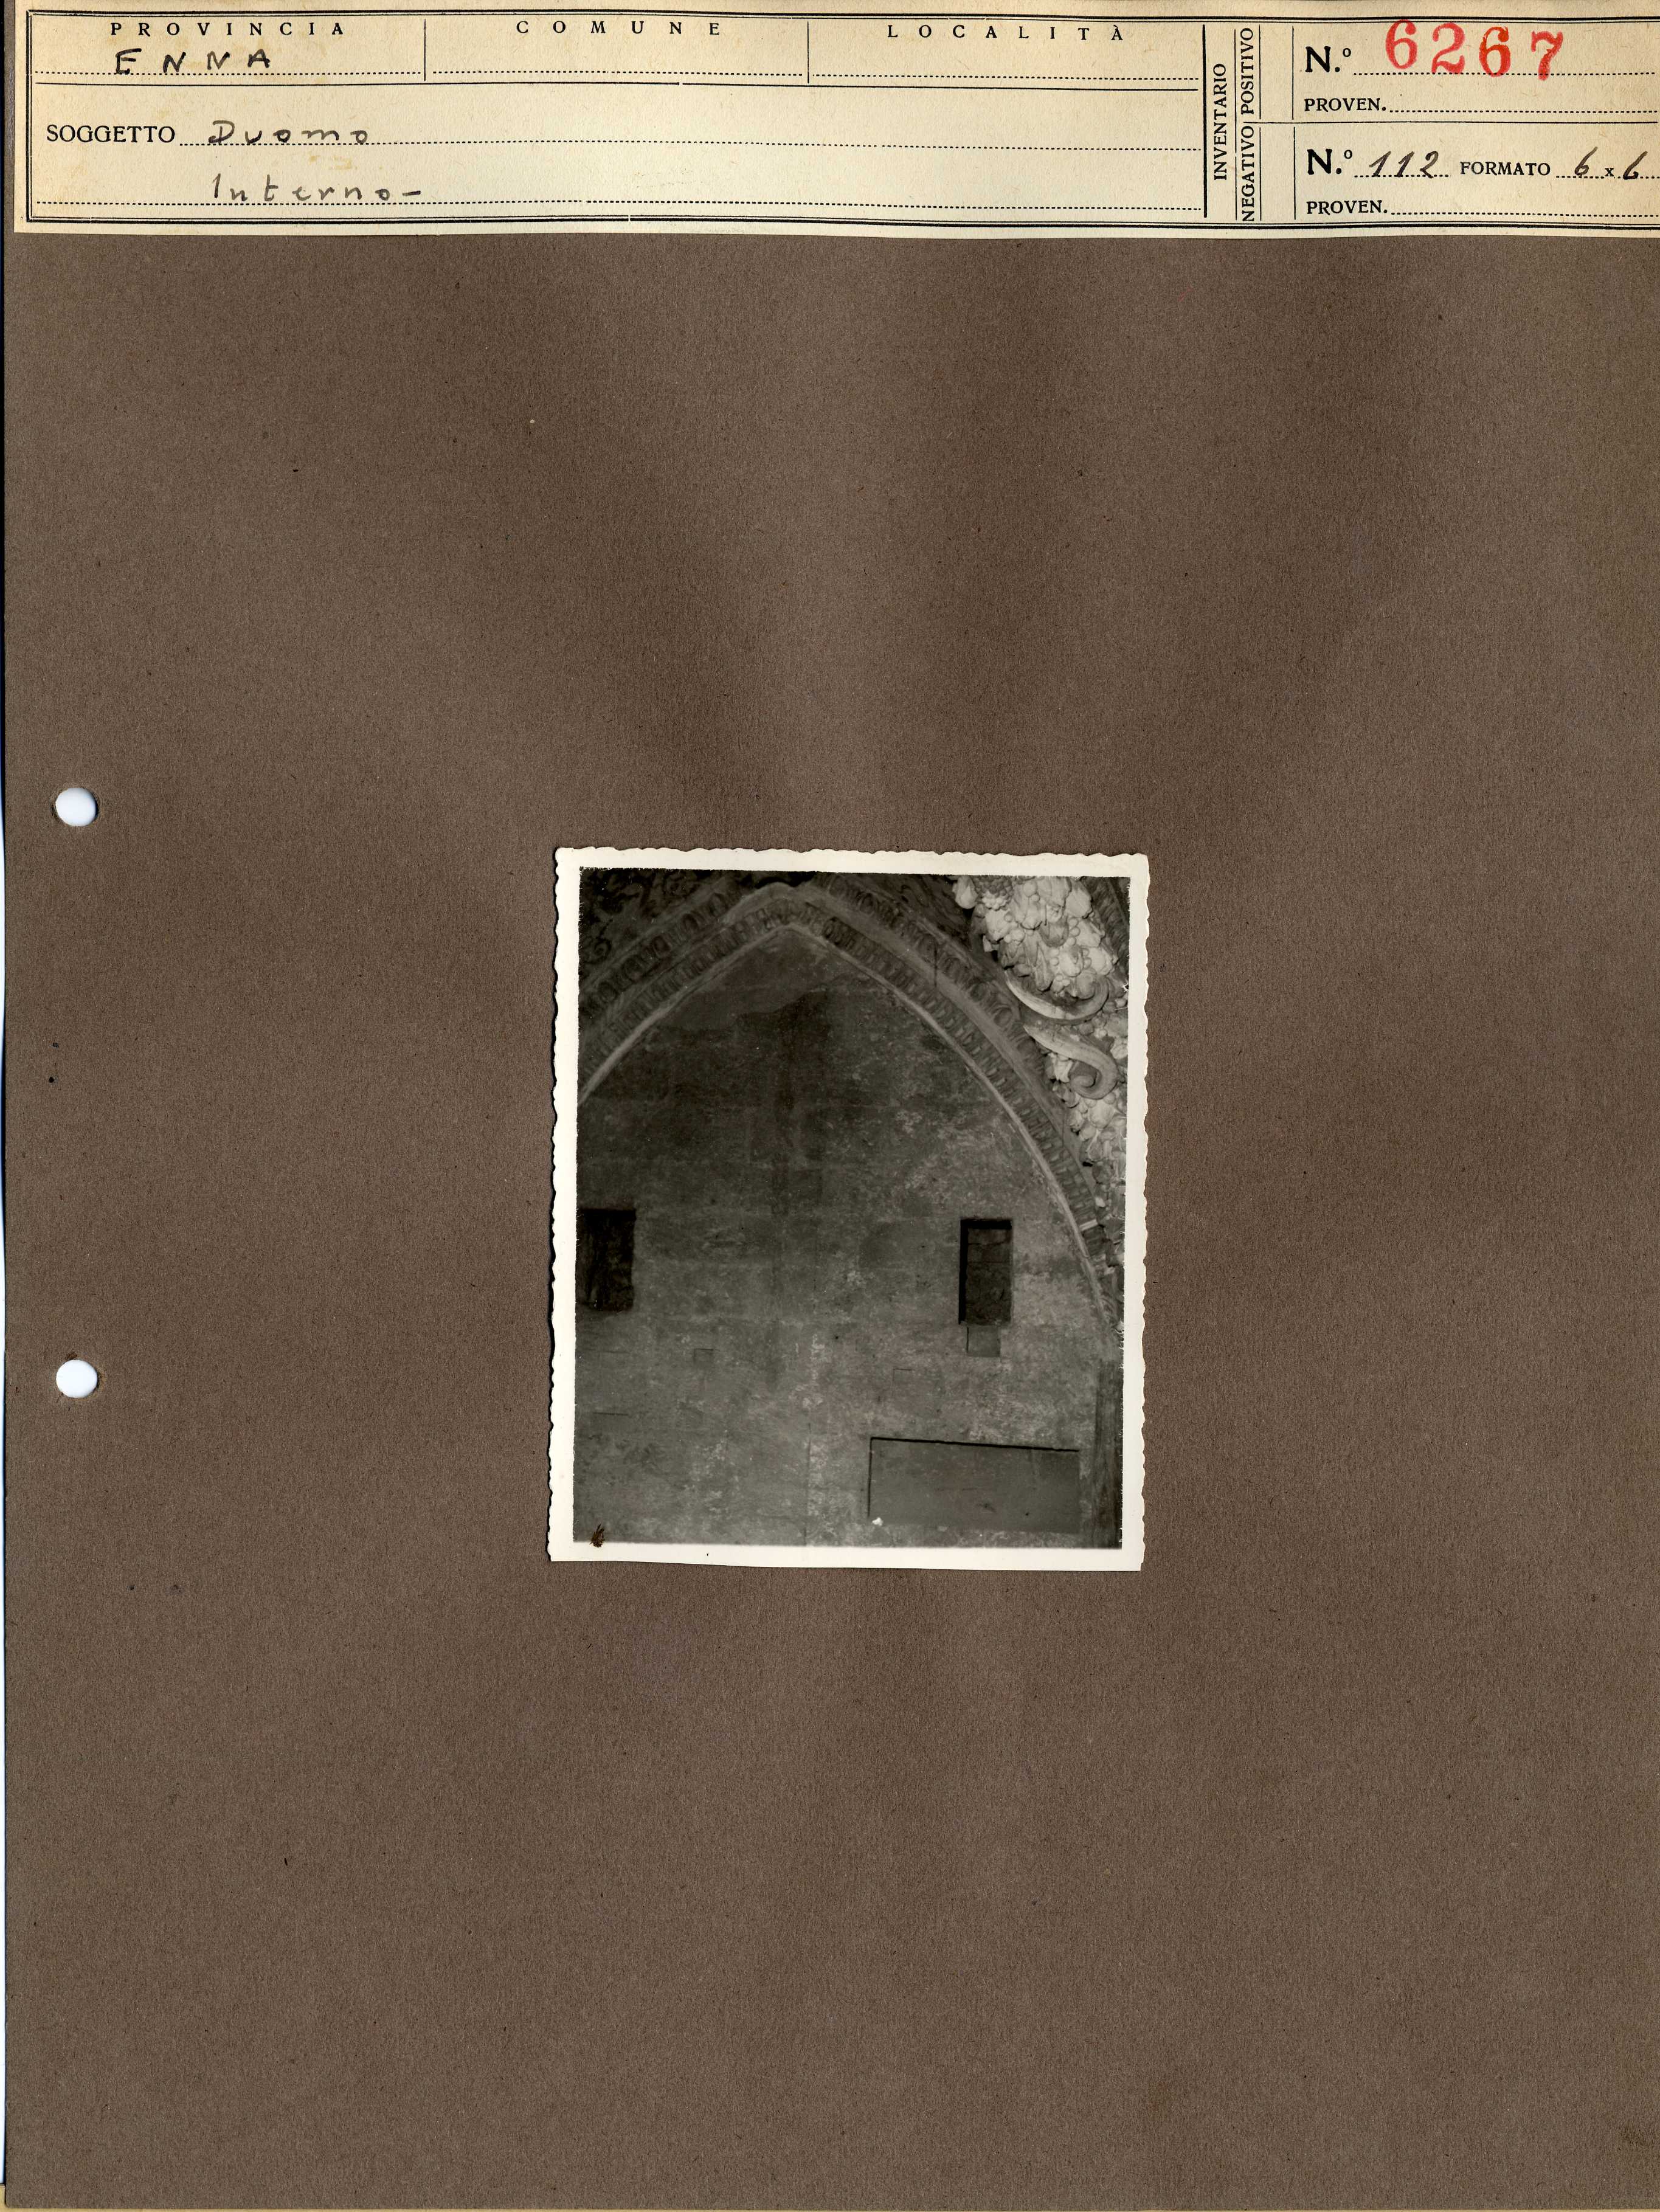 Sicilia - Enna – Architettura religiosa - Duomo - Restauri (positivo, elemento-parte componente, scheda di supporto) di Anonimo <1945 - 1955> (metà XX)